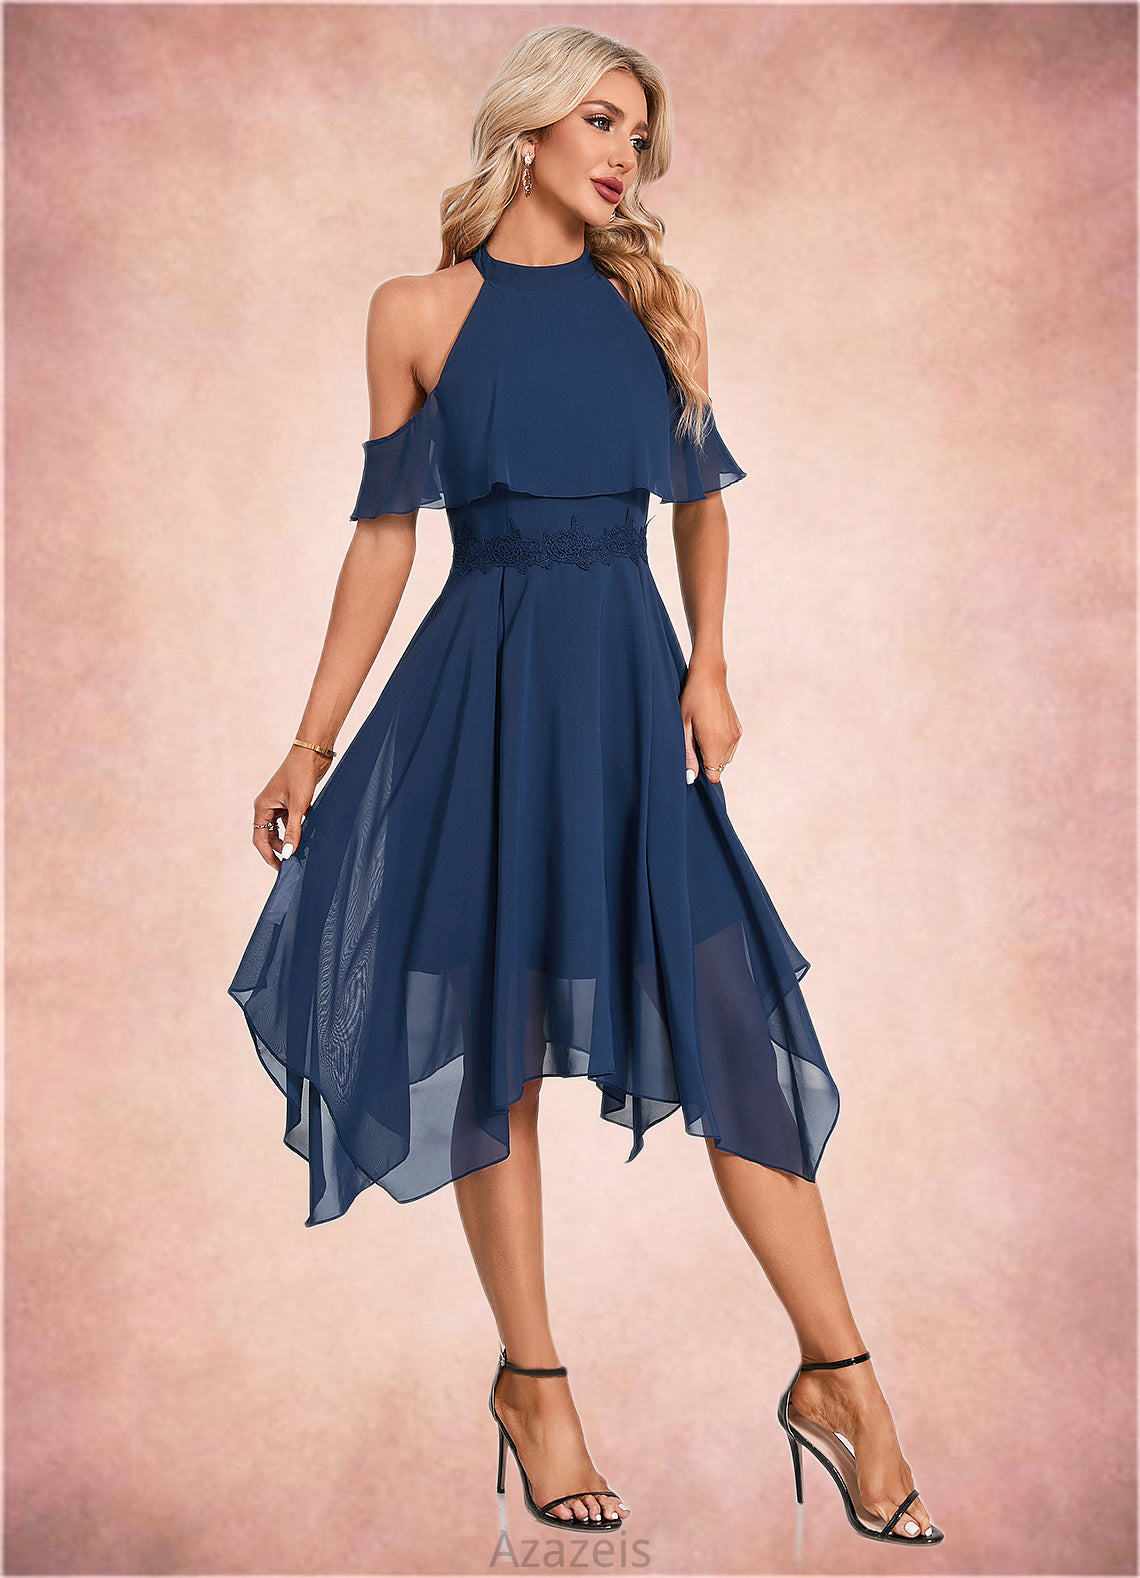 Lauretta Appliques Lace Off the Shoulder Elegant A-line Chiffon Asymmetrical Dresses DFP0022489